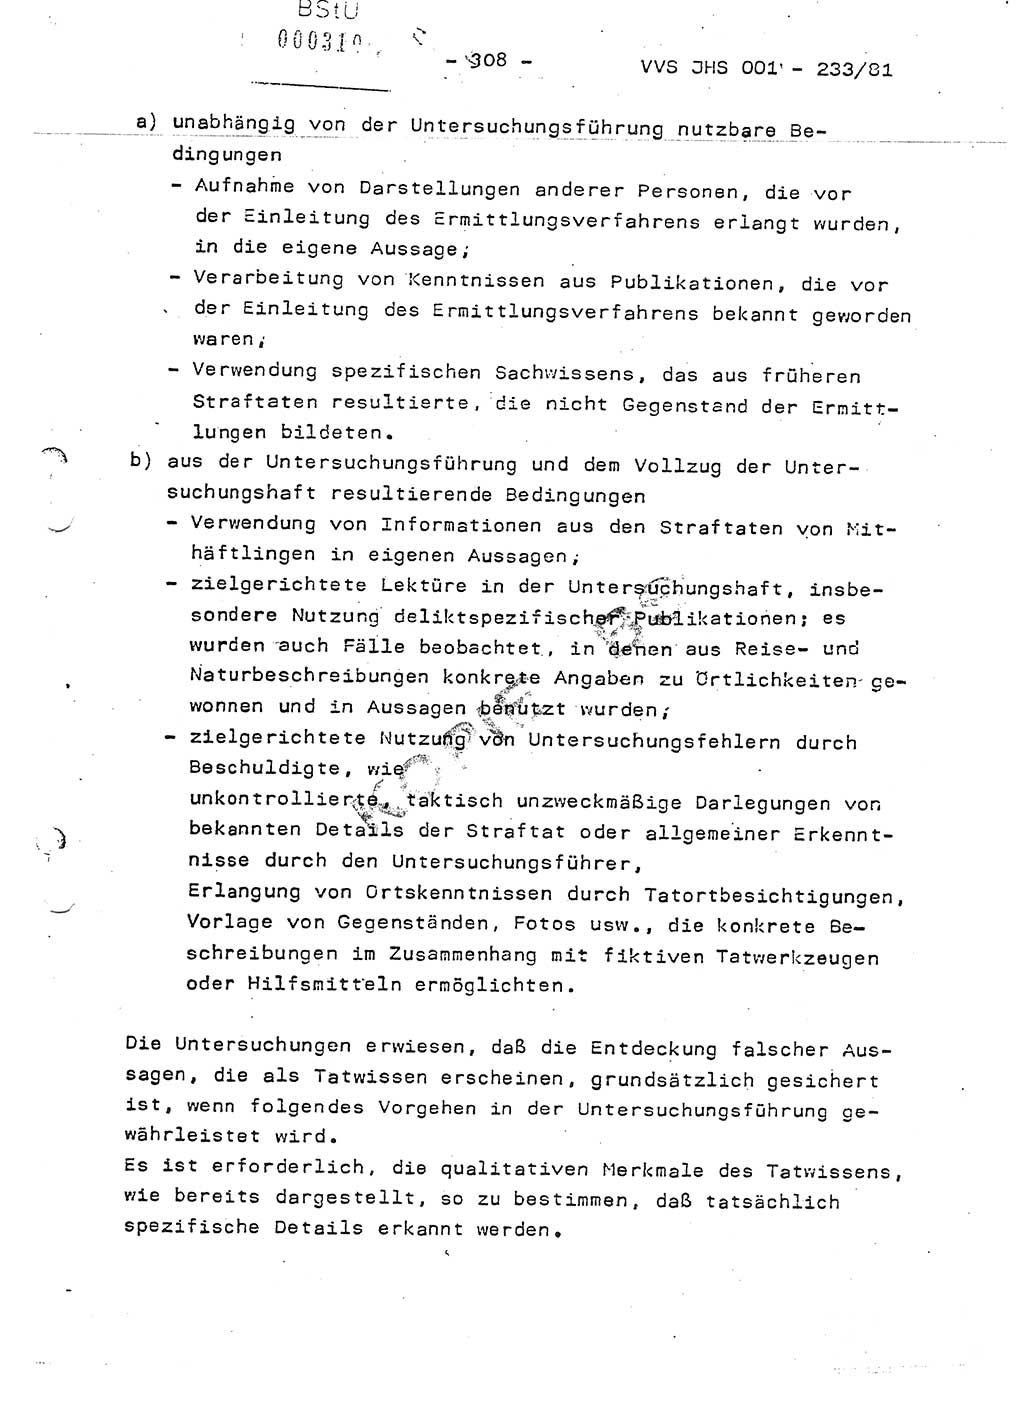 Dissertation Oberstleutnant Horst Zank (JHS), Oberstleutnant Dr. Karl-Heinz Knoblauch (JHS), Oberstleutnant Gustav-Adolf Kowalewski (HA Ⅸ), Oberstleutnant Wolfgang Plötner (HA Ⅸ), Ministerium für Staatssicherheit (MfS) [Deutsche Demokratische Republik (DDR)], Juristische Hochschule (JHS), Vertrauliche Verschlußsache (VVS) o001-233/81, Potsdam 1981, Blatt 308 (Diss. MfS DDR JHS VVS o001-233/81 1981, Bl. 308)